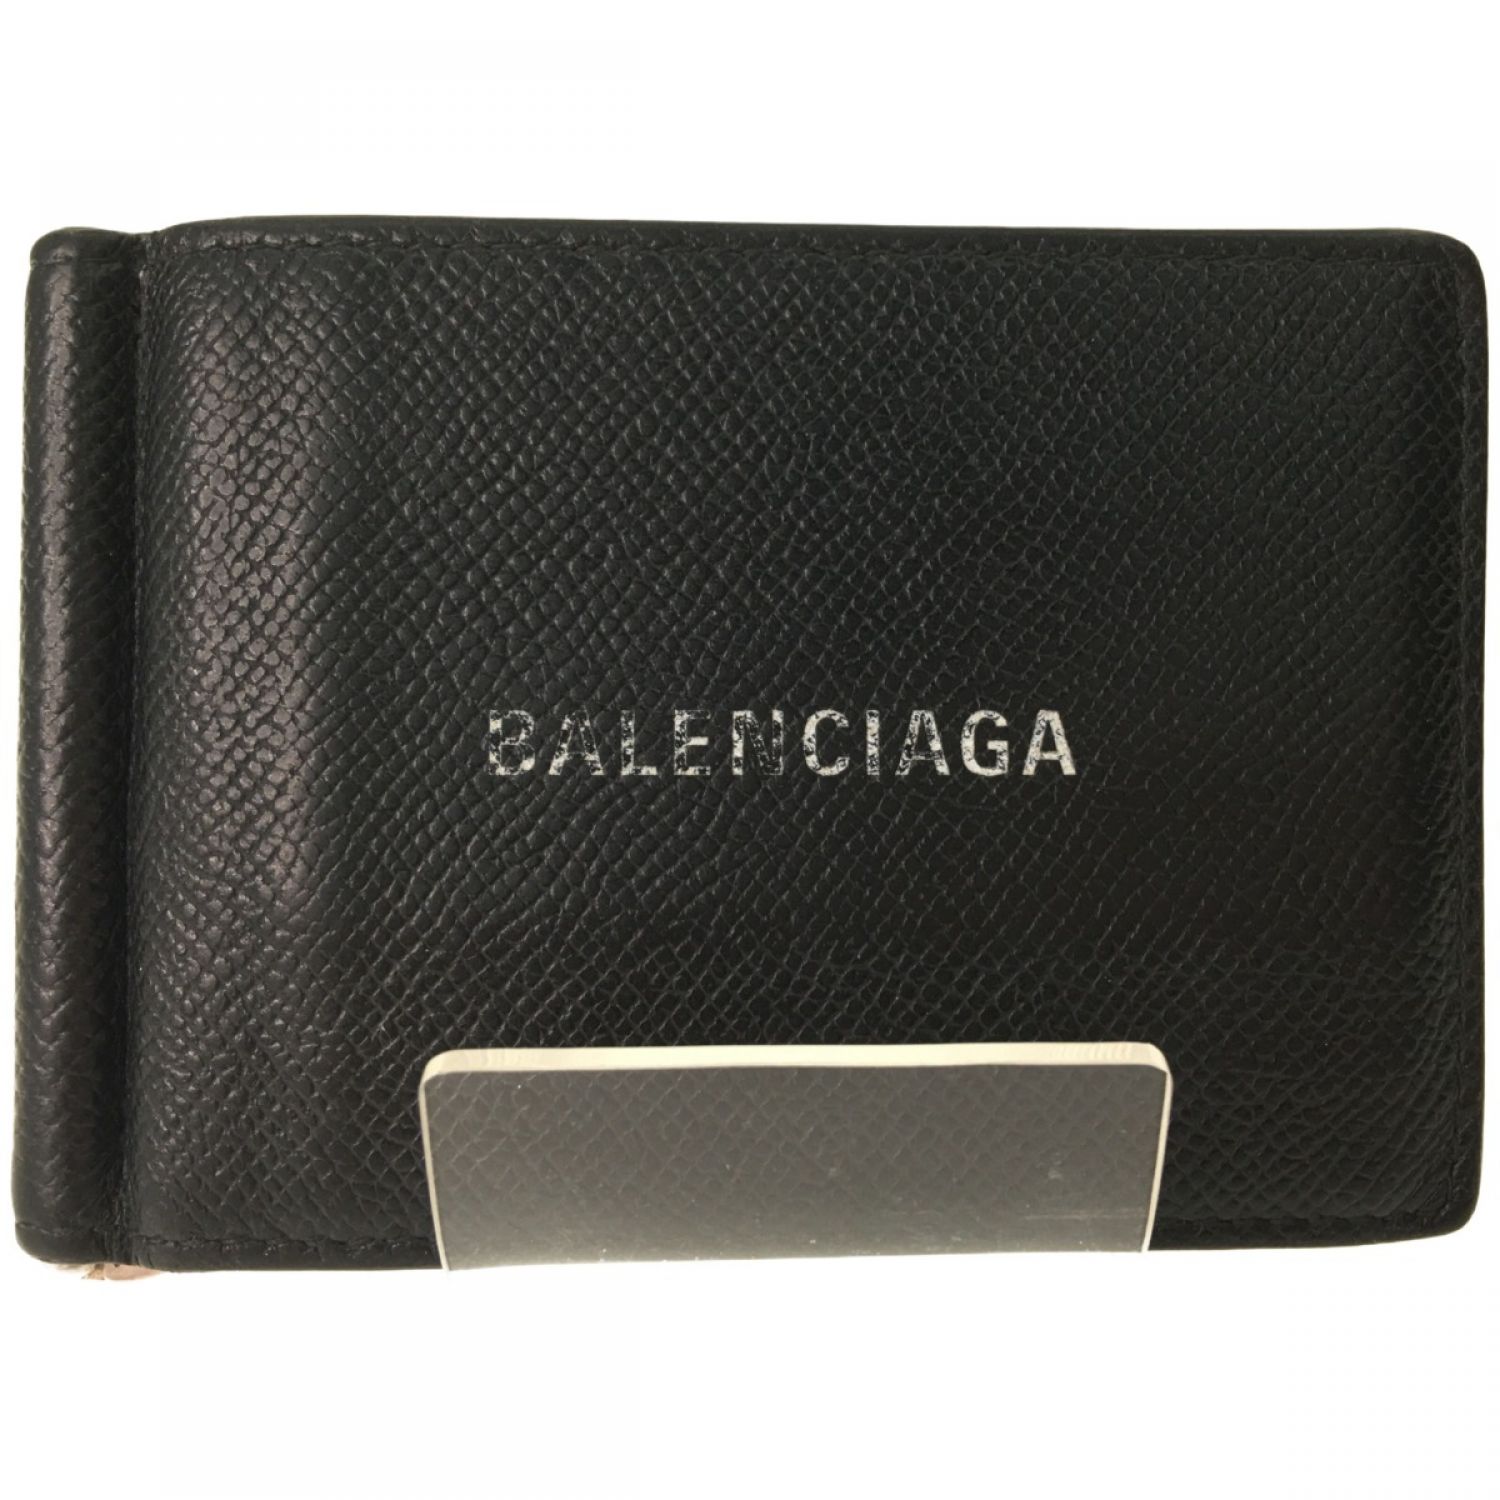 バレンシアガ Balenciaga マネークリップ 二つ折り財布 メンズ www